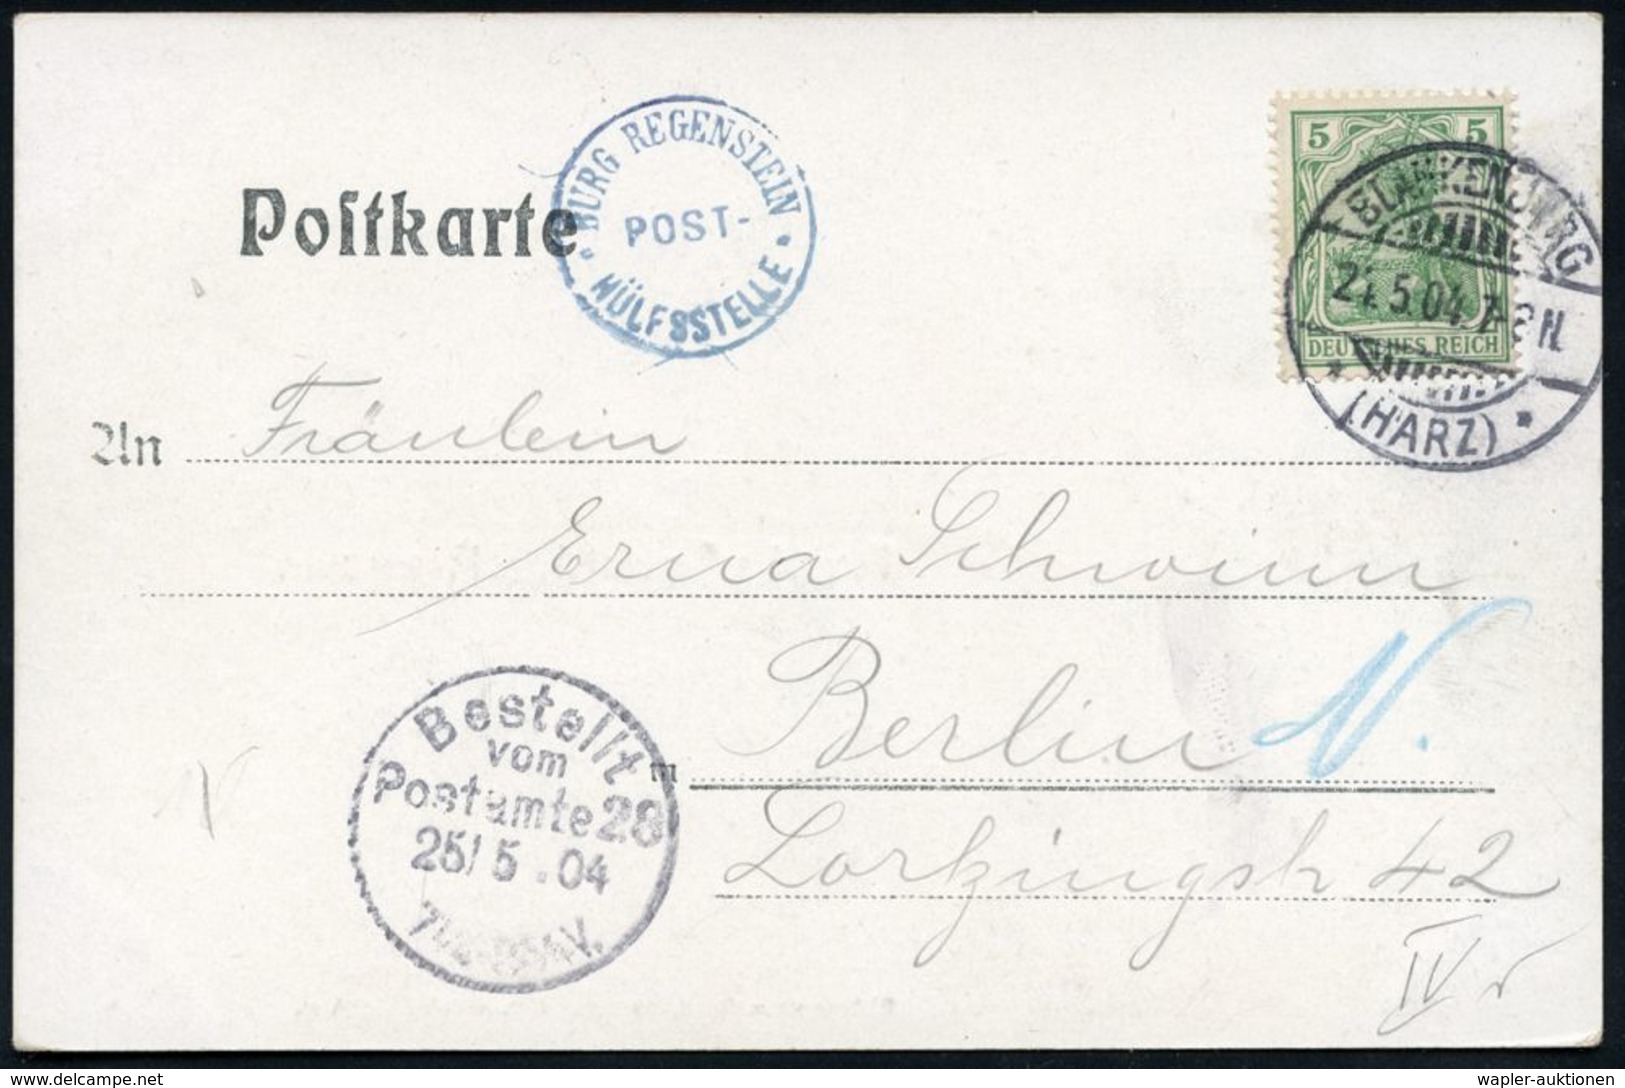 BURGEN / SCHLÖSSER / FESTUNGEN : BURG REGENSTEIN/ POST-/ HÜLFSSTELLE 1904 (21.5.) Blauer 1K-HdN = PSt.II = Hauspostamt B - Châteaux